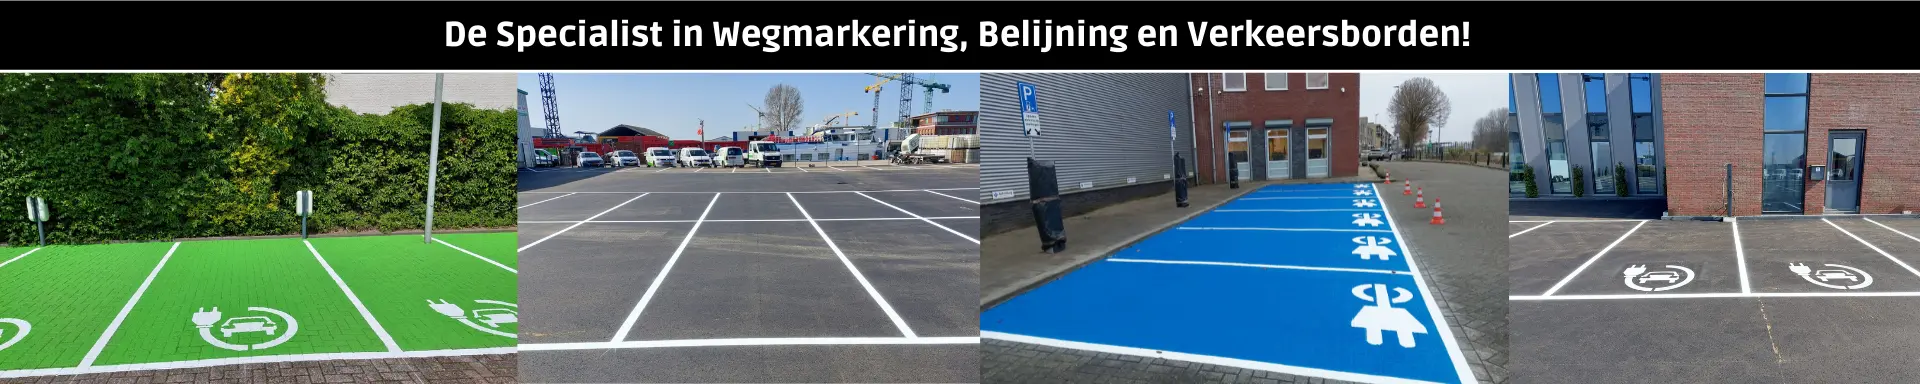 Belijning parkeervakken Traffictotaal.nl